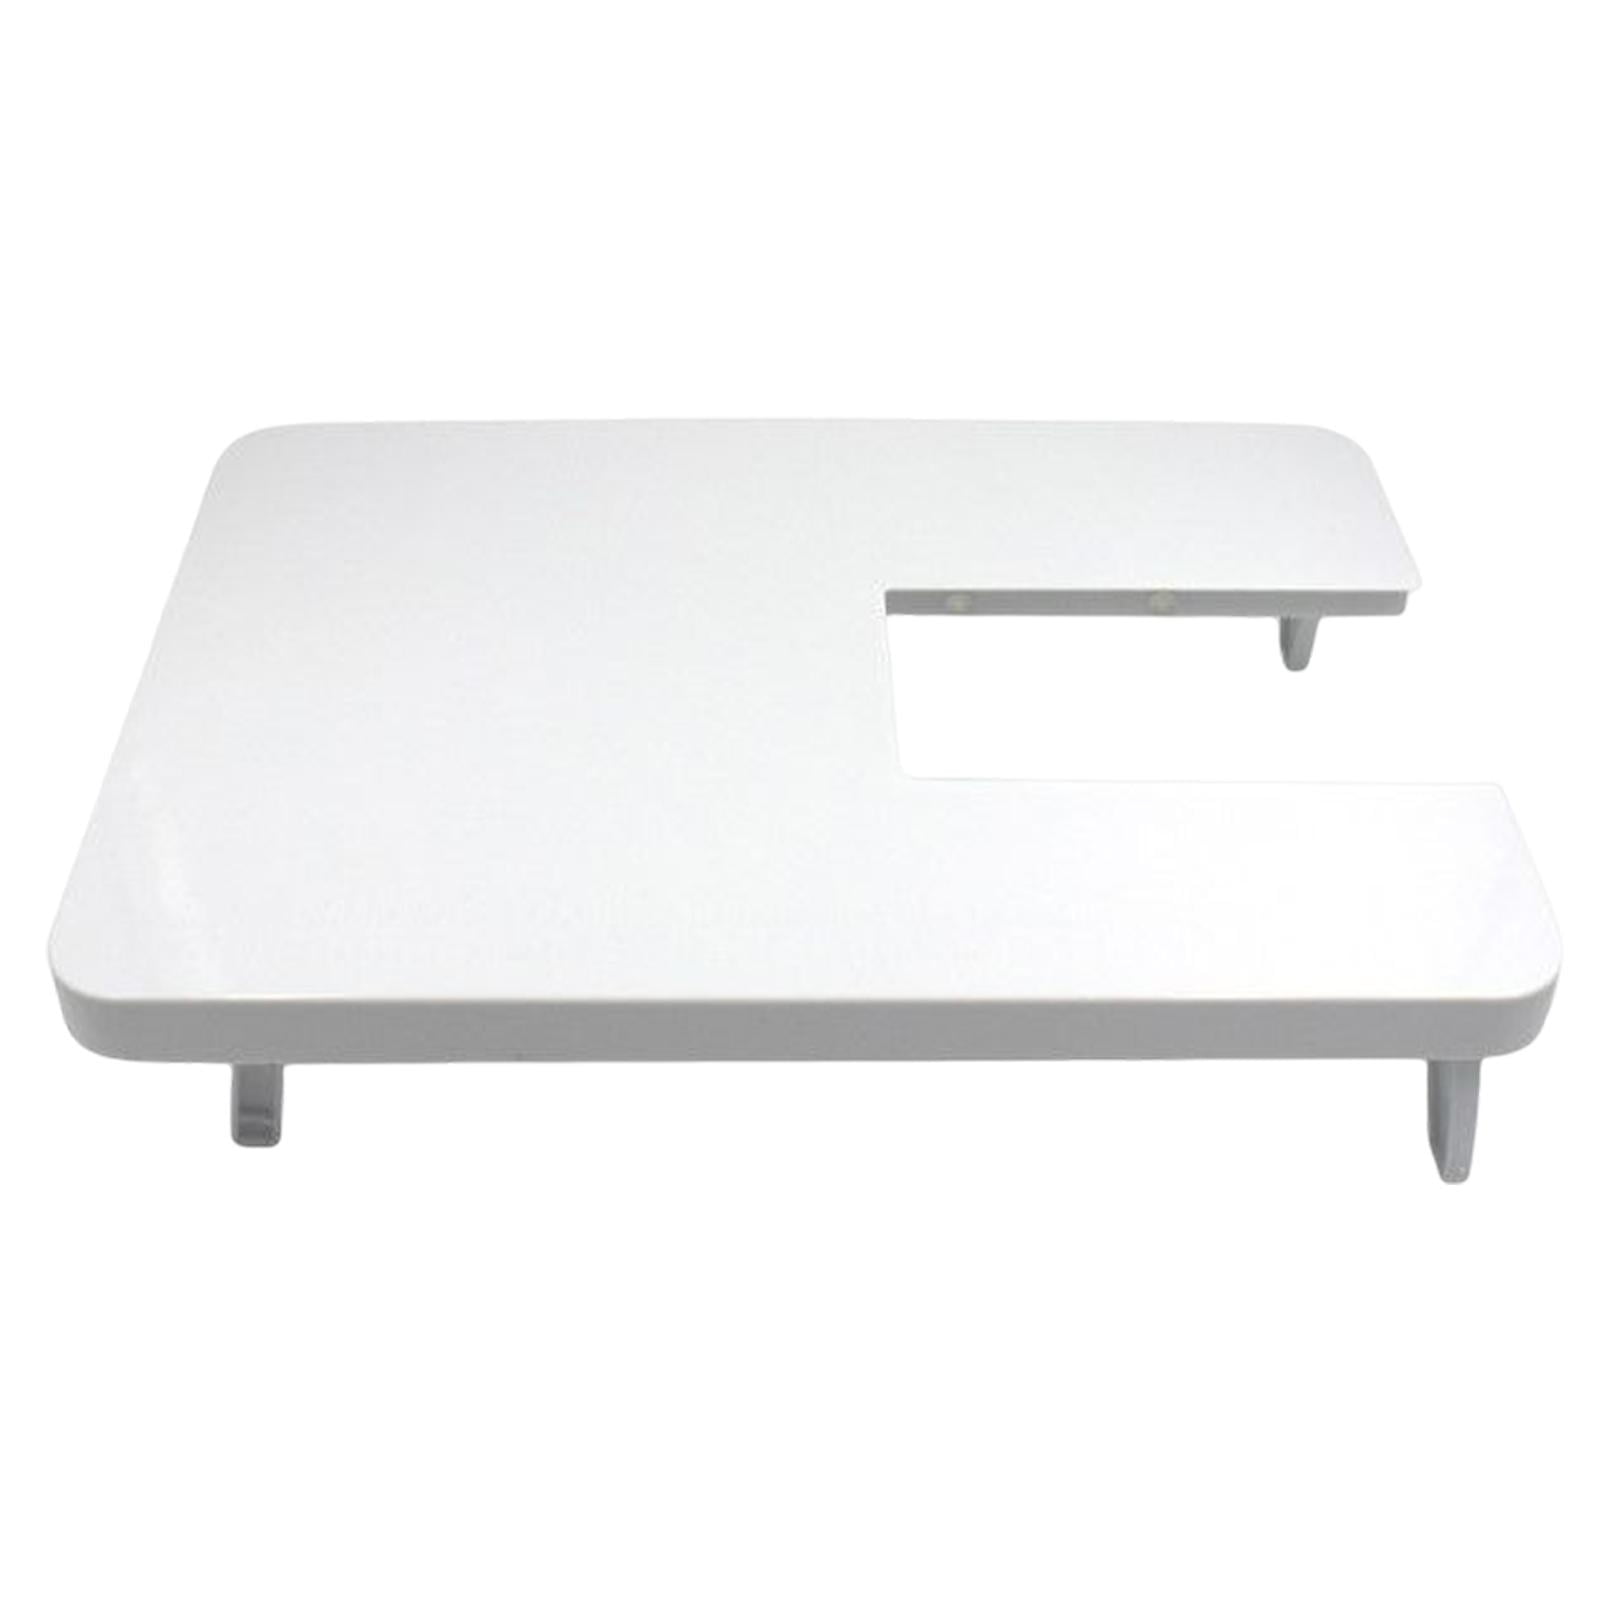 Como hacer mesa para maquina de coser / DIY Folding table for